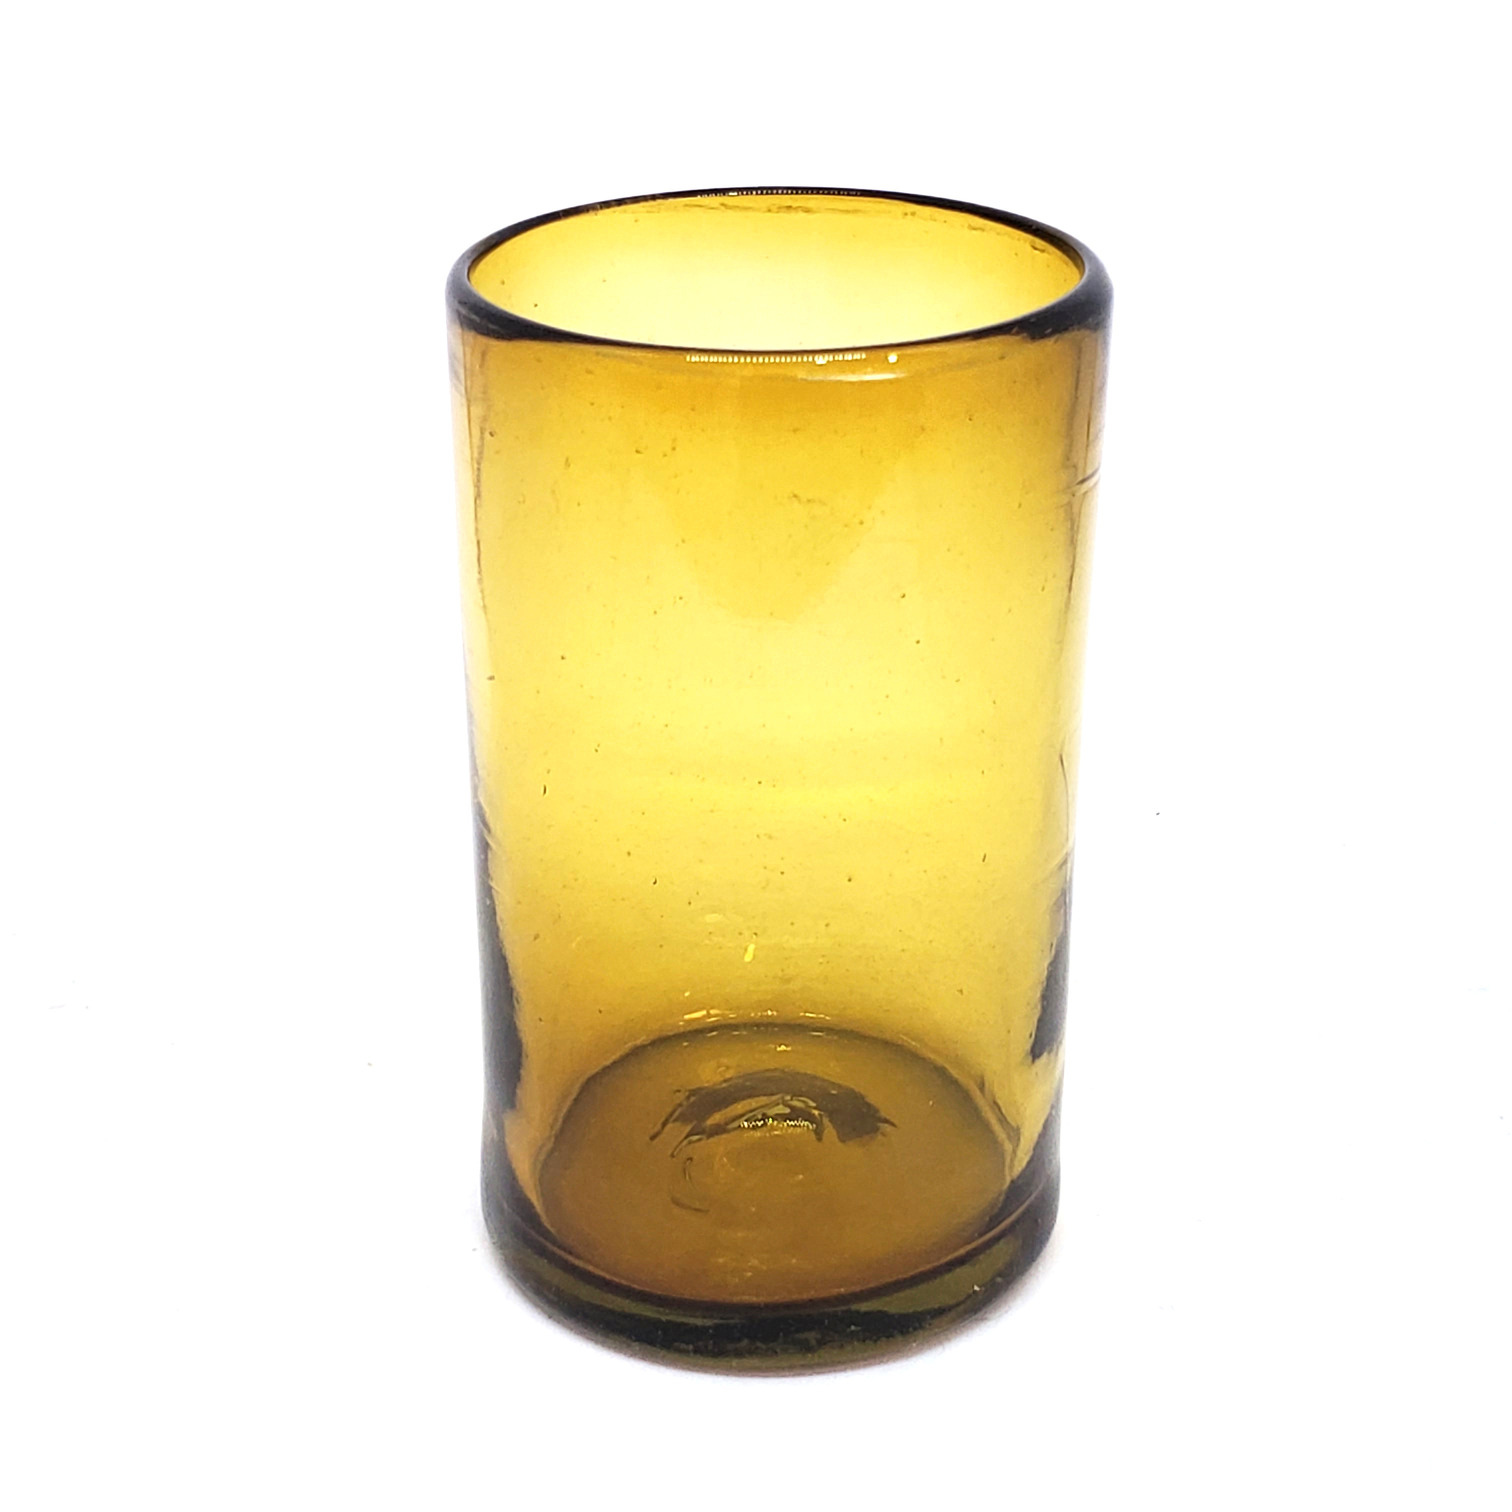 Novedades / Juego de 6 vasos grandes color ambar / Éstos artesanales vasos le darán un toque clásico a su bebida favorita.